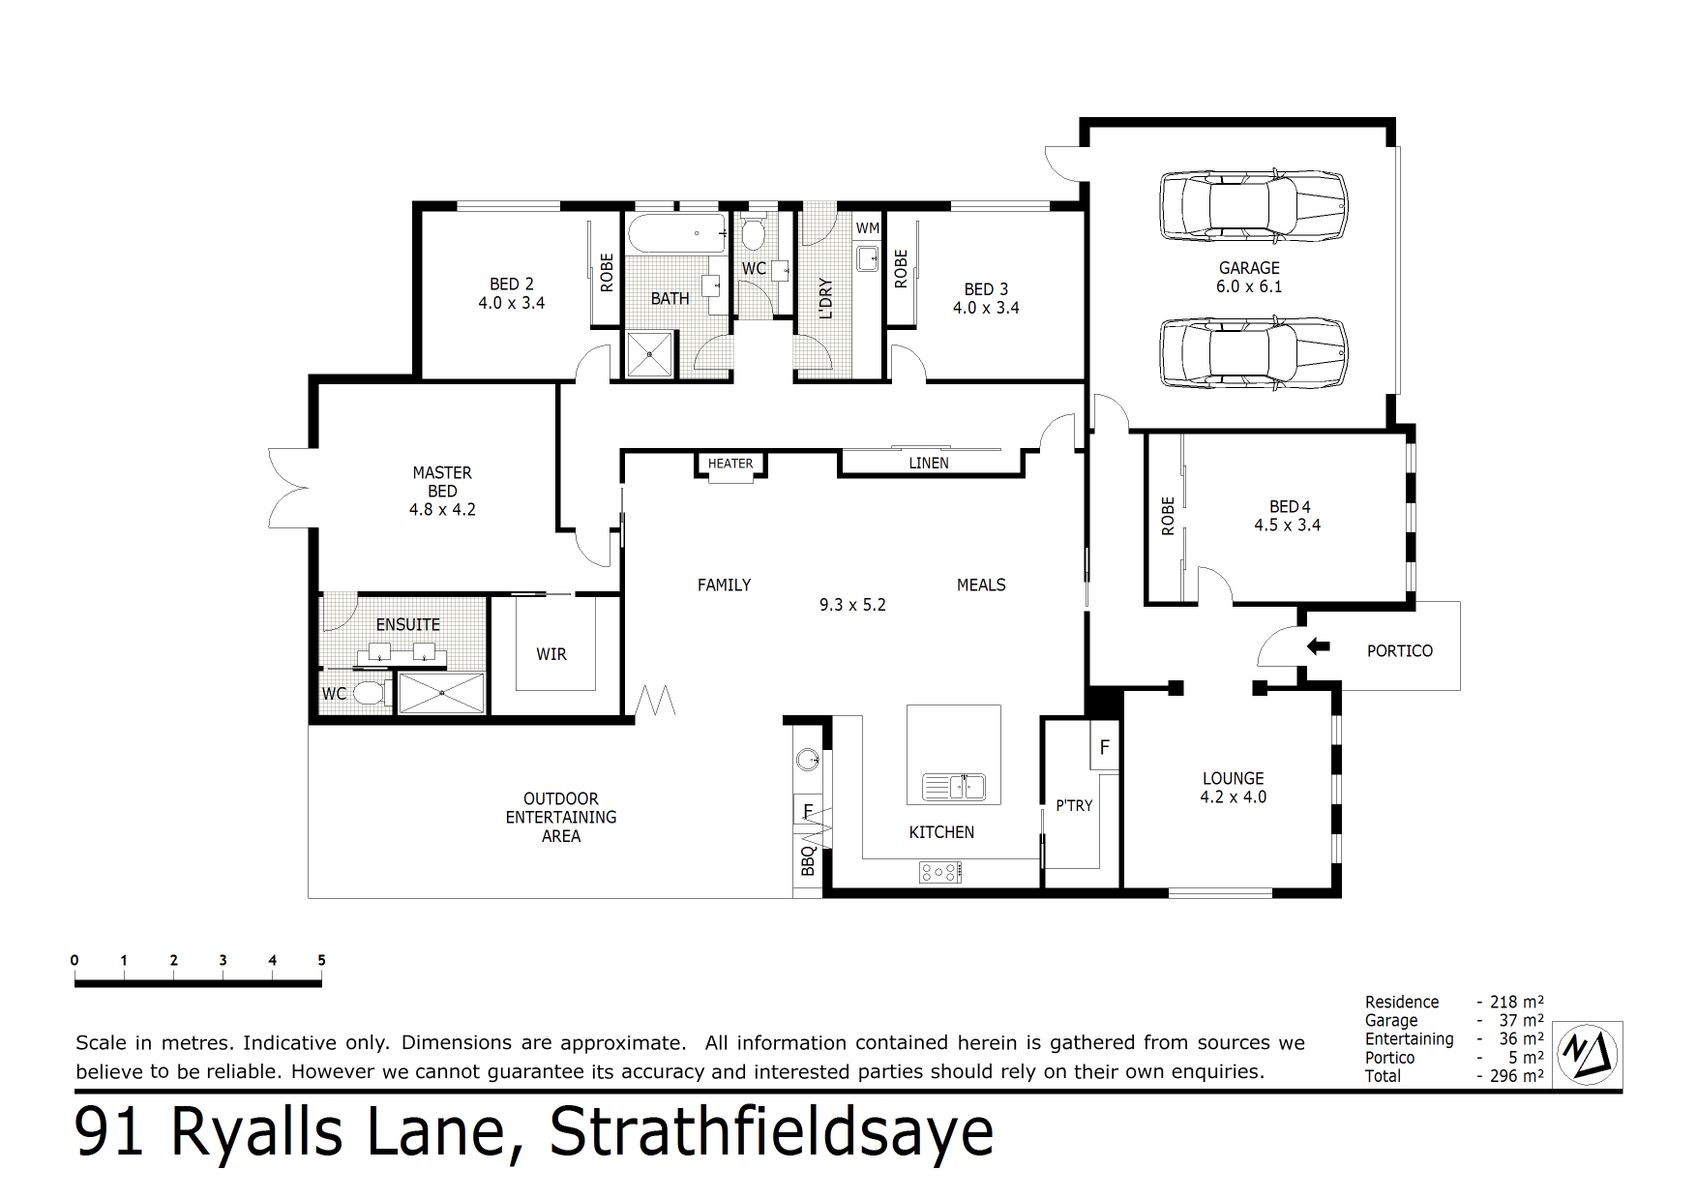 91 Ryalls Lane Strathfieldsaye (09 SEP 2021) 255 sqm (1)